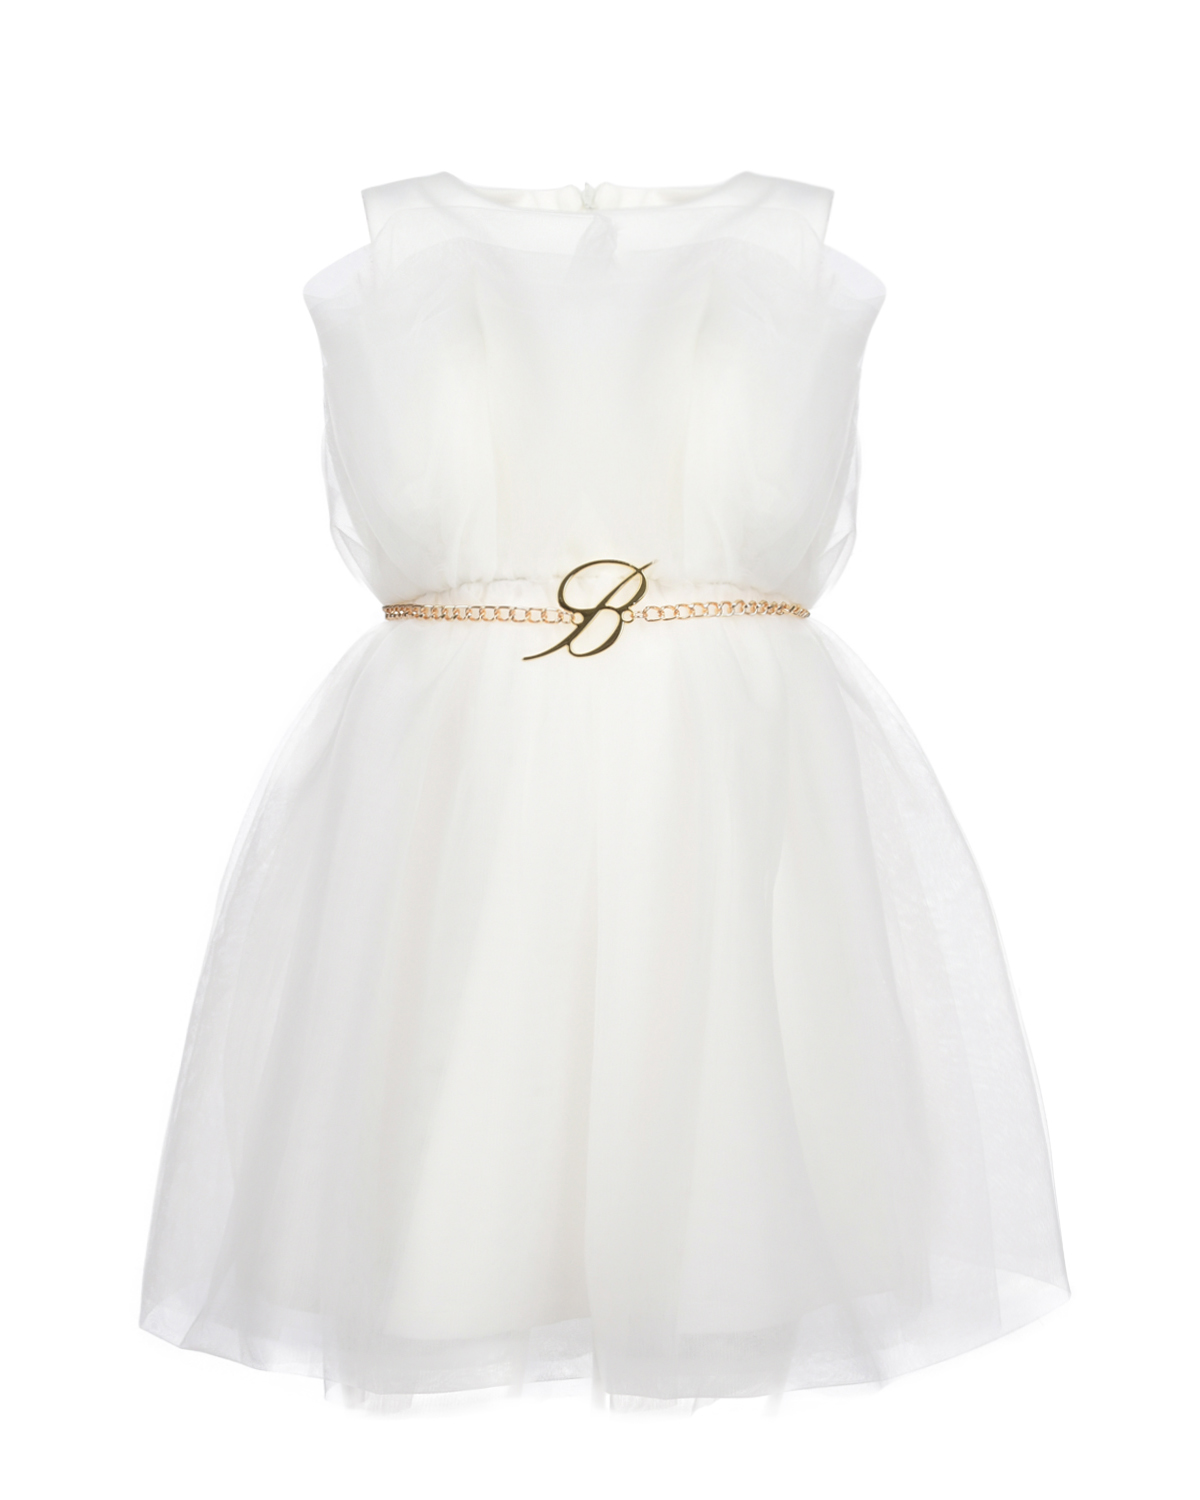 Белое платье с поясом-цепочкой Miss Blumarine, размер 128, цвет белый - фото 1